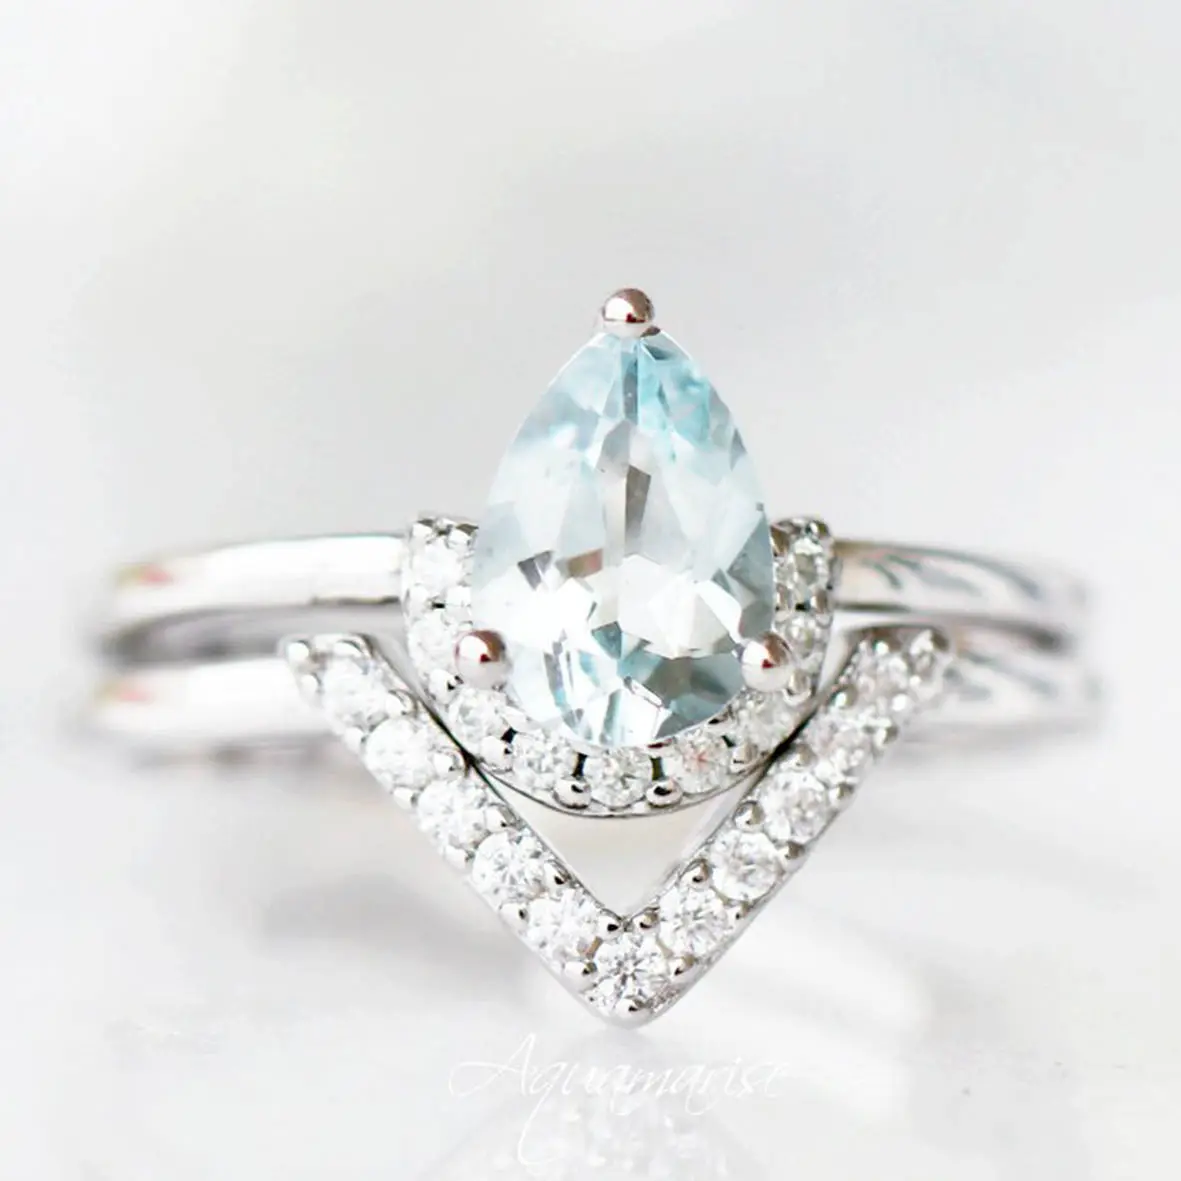 Pedra de aniversário de março, presente para seu anel de casamento com pedra azul s925, conjunto de anel de noivado aquamarino, vintage